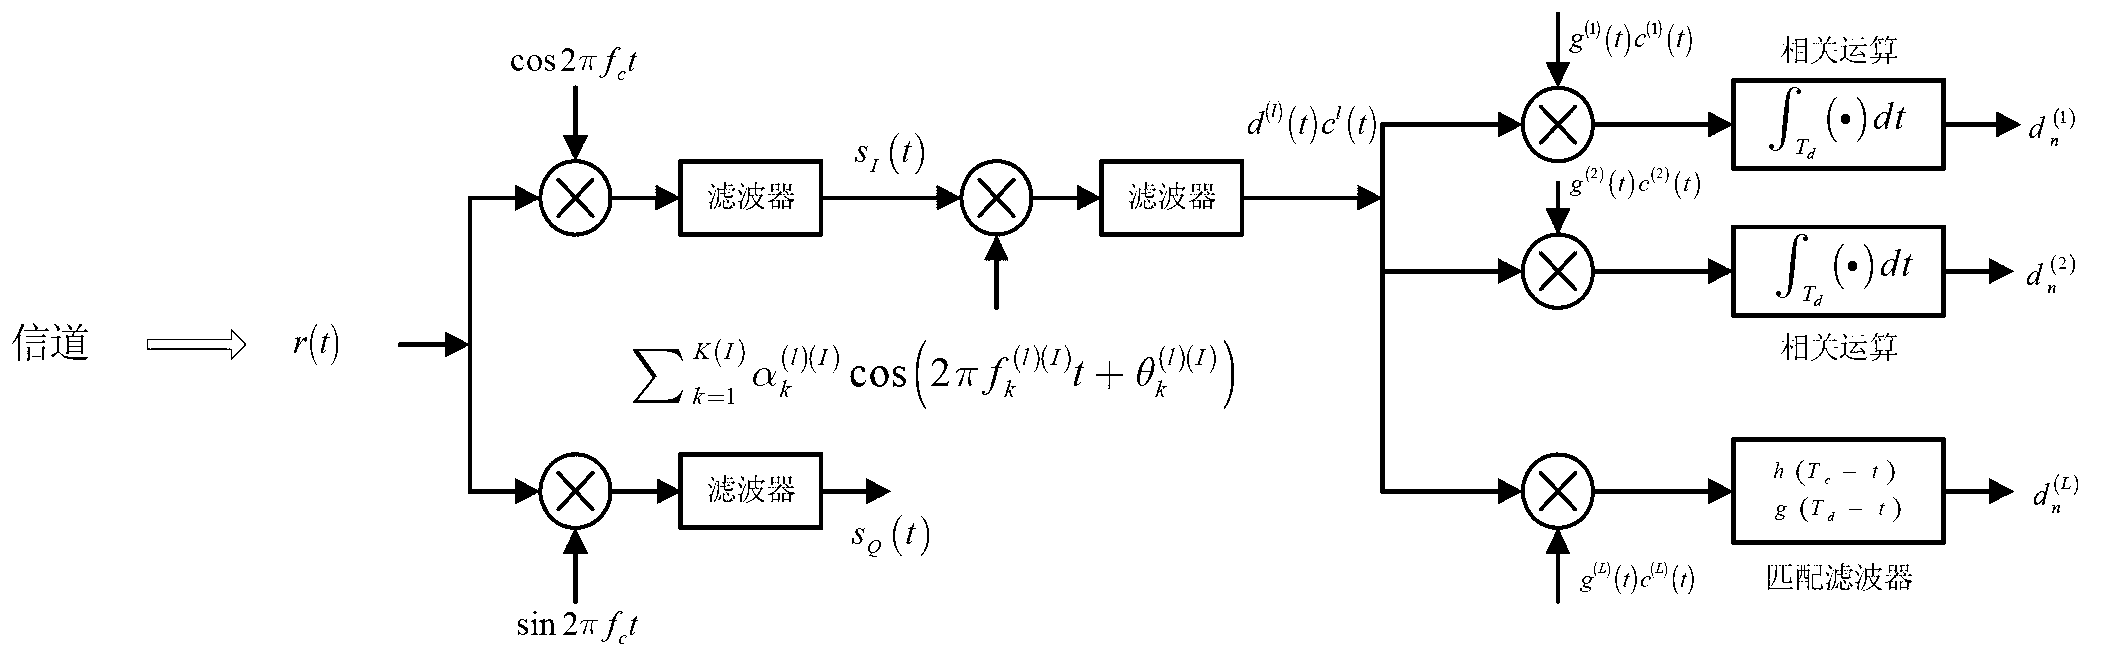 Transmission method of multi-carrier data